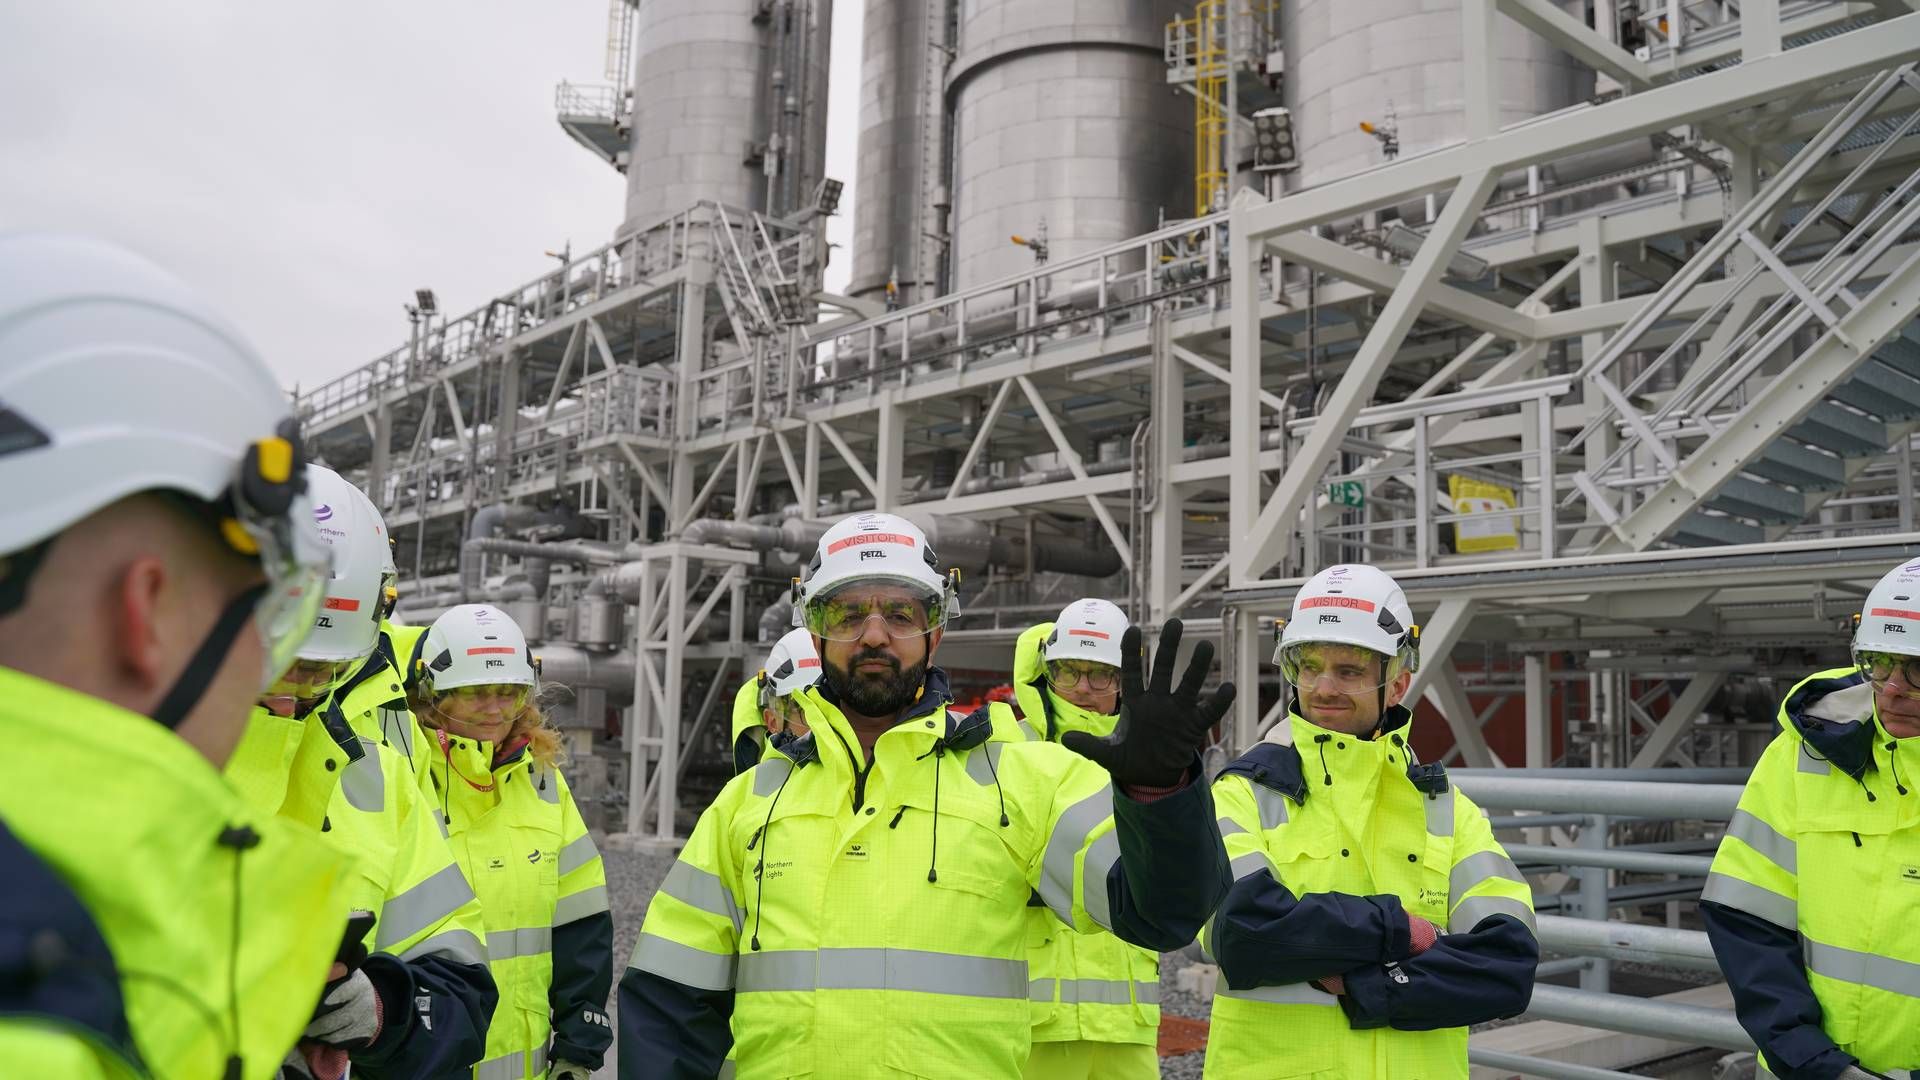 Imran Abdul-Majid er teknisk leder af Northern Lights-projektet, der er bygget lidt uden for Bergen i Norge. Han viste EnergiWatch rundt på sitet, hvor der i de kommende år skal lagres op mod fem mio. ton CO2 om året. Foto: Laura Kold